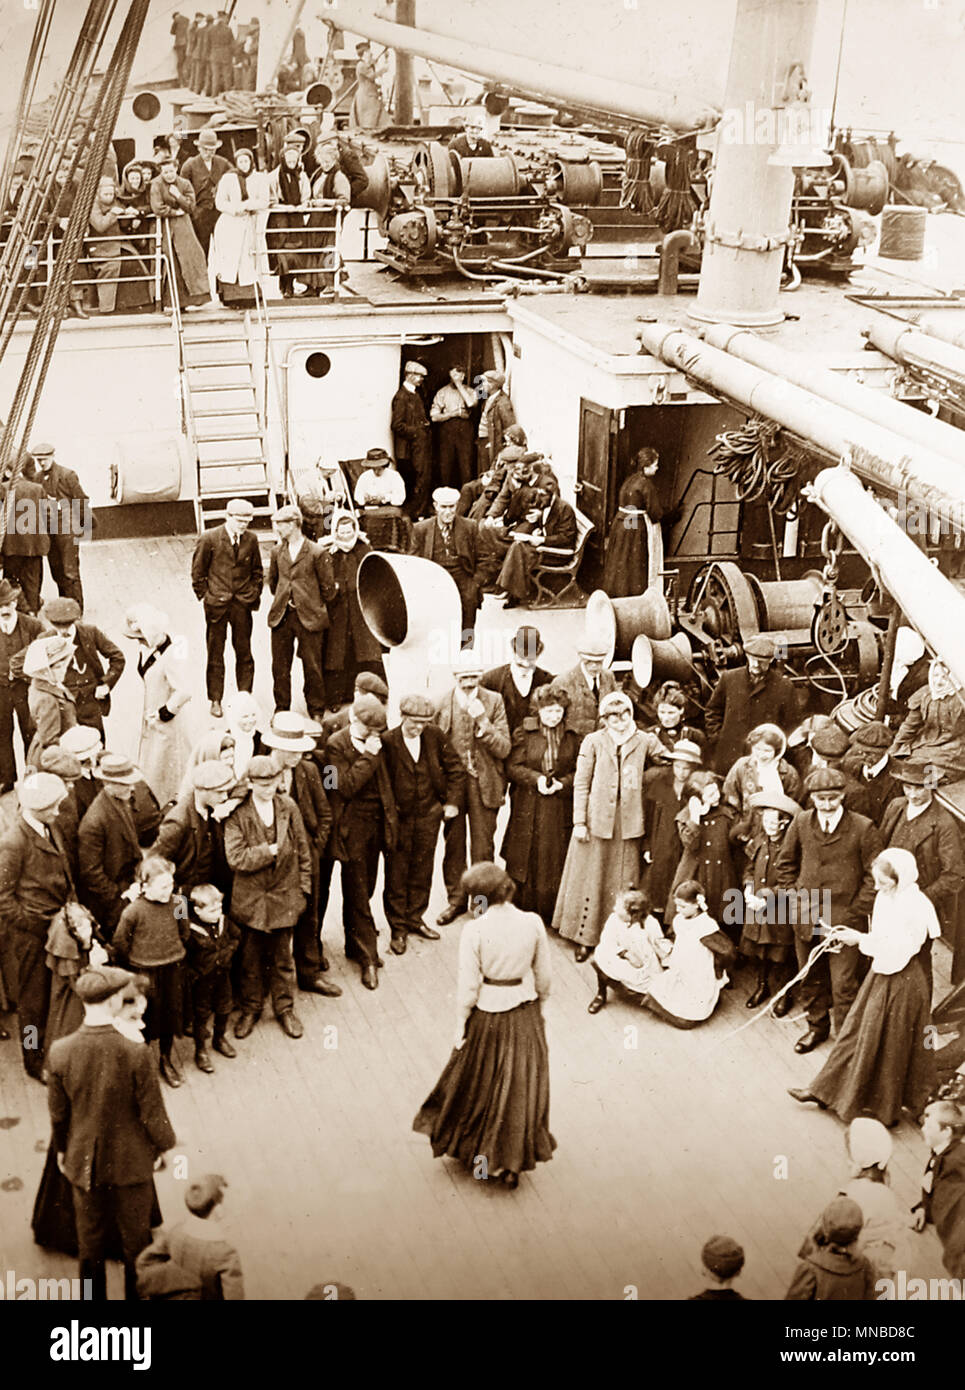 Les émigrants en route pour le Canada à partir de la Grande-Bretagne, début des années 1900 Banque D'Images